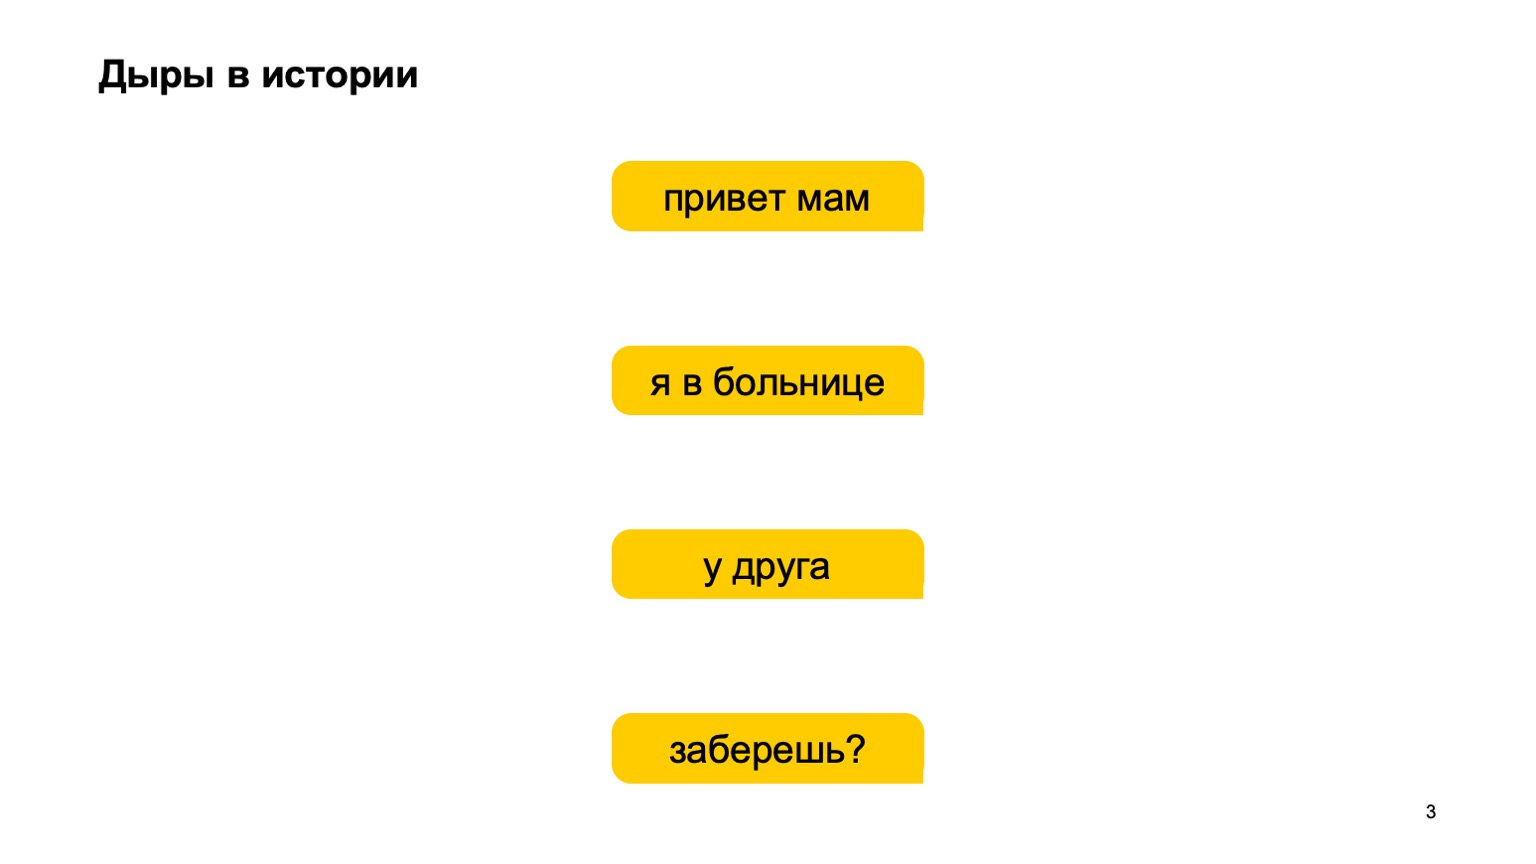 Мобильная разработка — это просто и скучно? Доклад Яндекса - 3